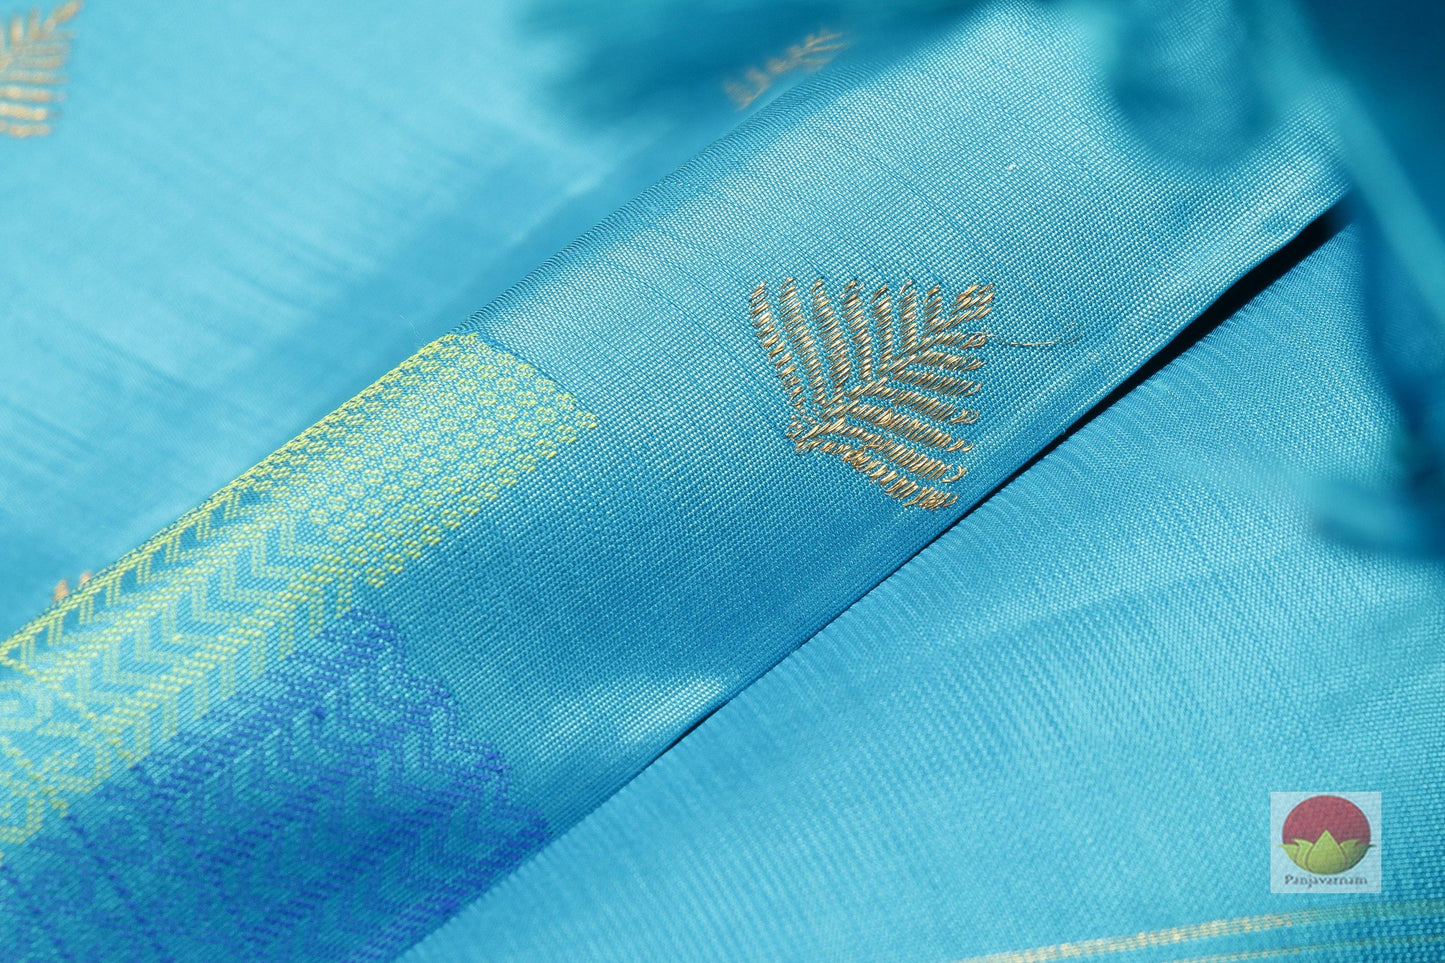 Borderless Handwoven Pure Silk Kanjivaram Saree - Pure Zari - PV SVS 10502 Archives - Silk Sari - Panjavarnam